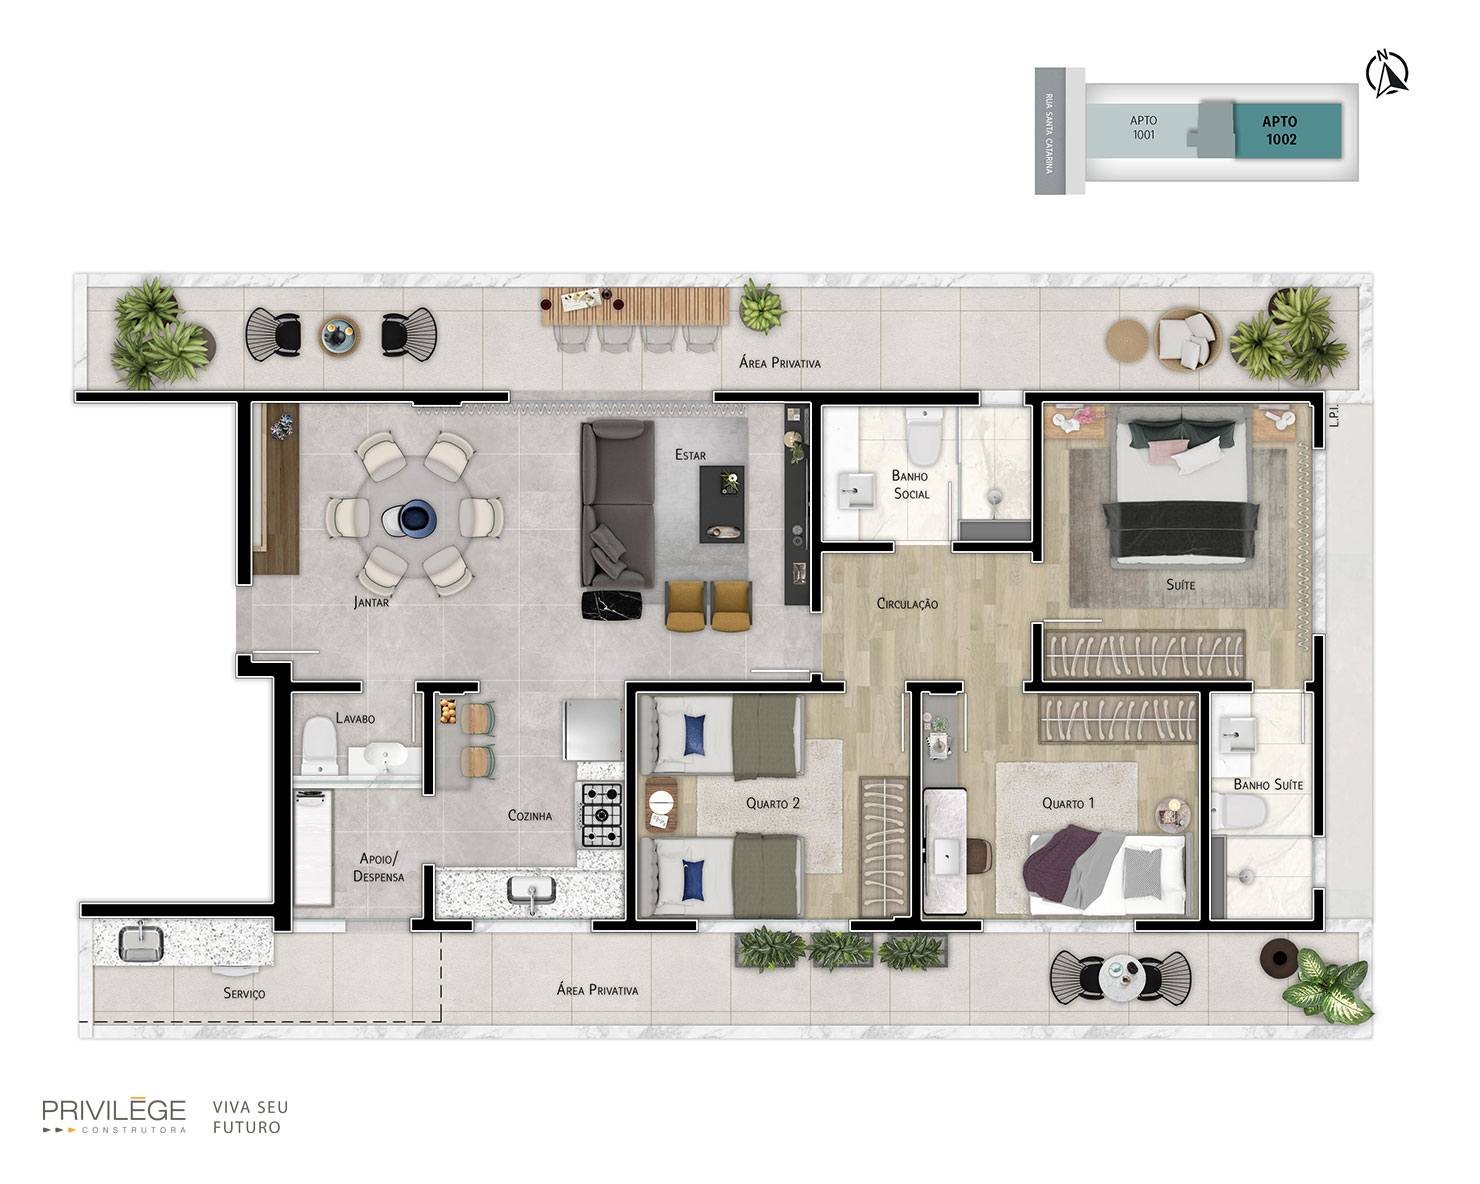 Apartamento terrace 3 quartos com cozinha integrada – 1002